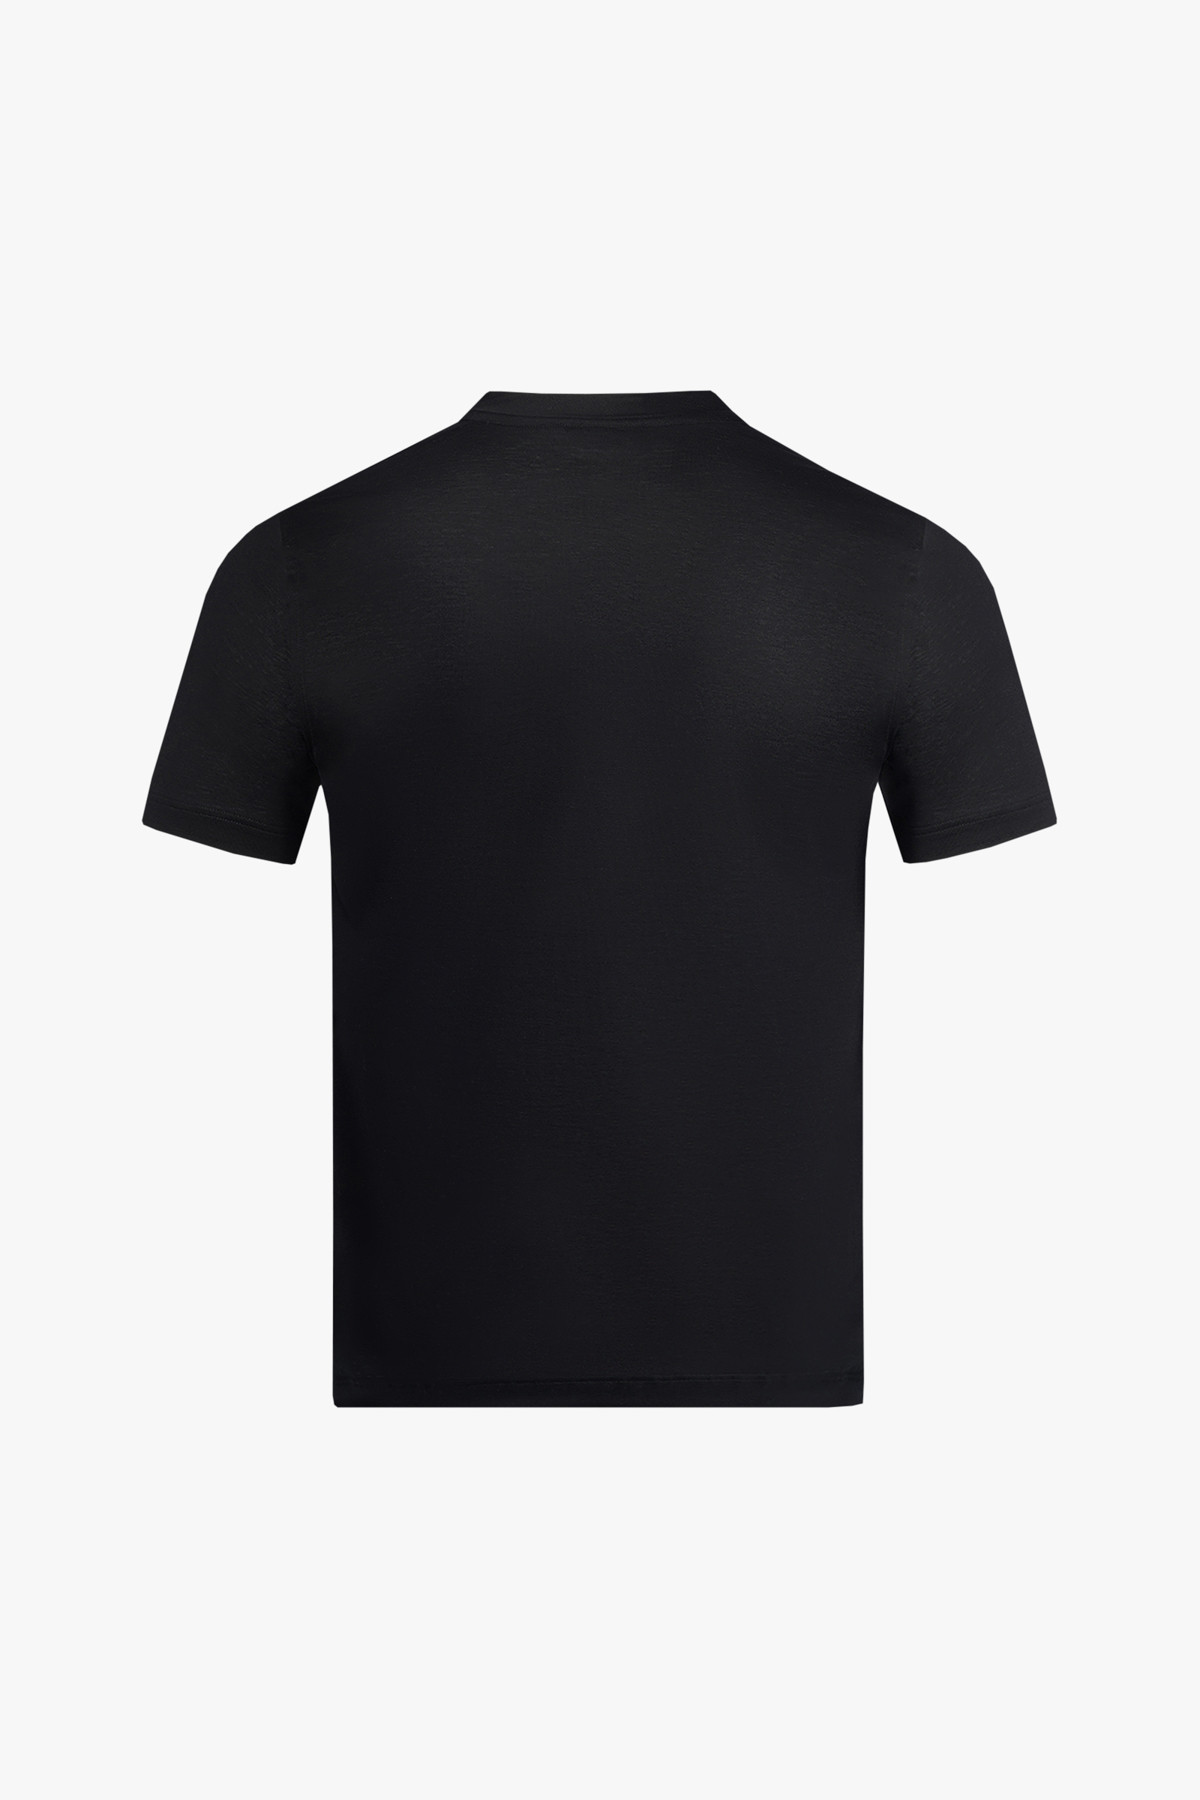 Black T-shirt,